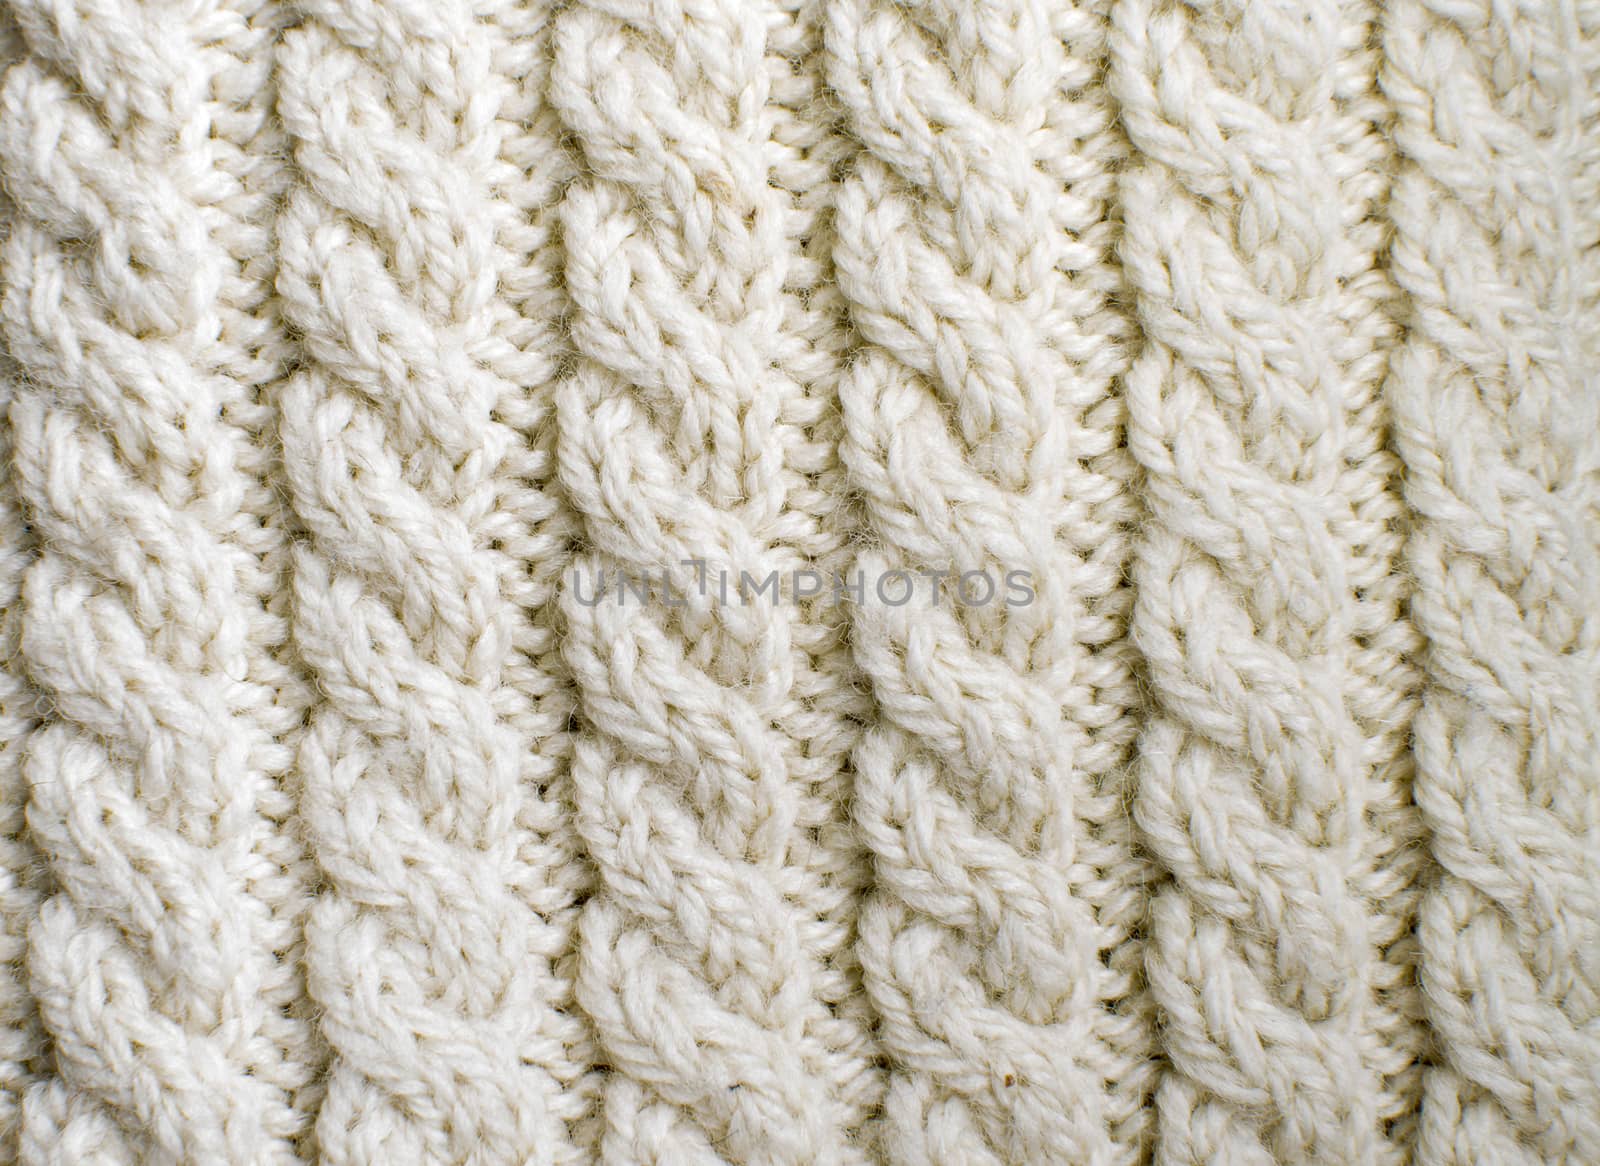 Creamy off-white wool knitwork by ArtesiaWells